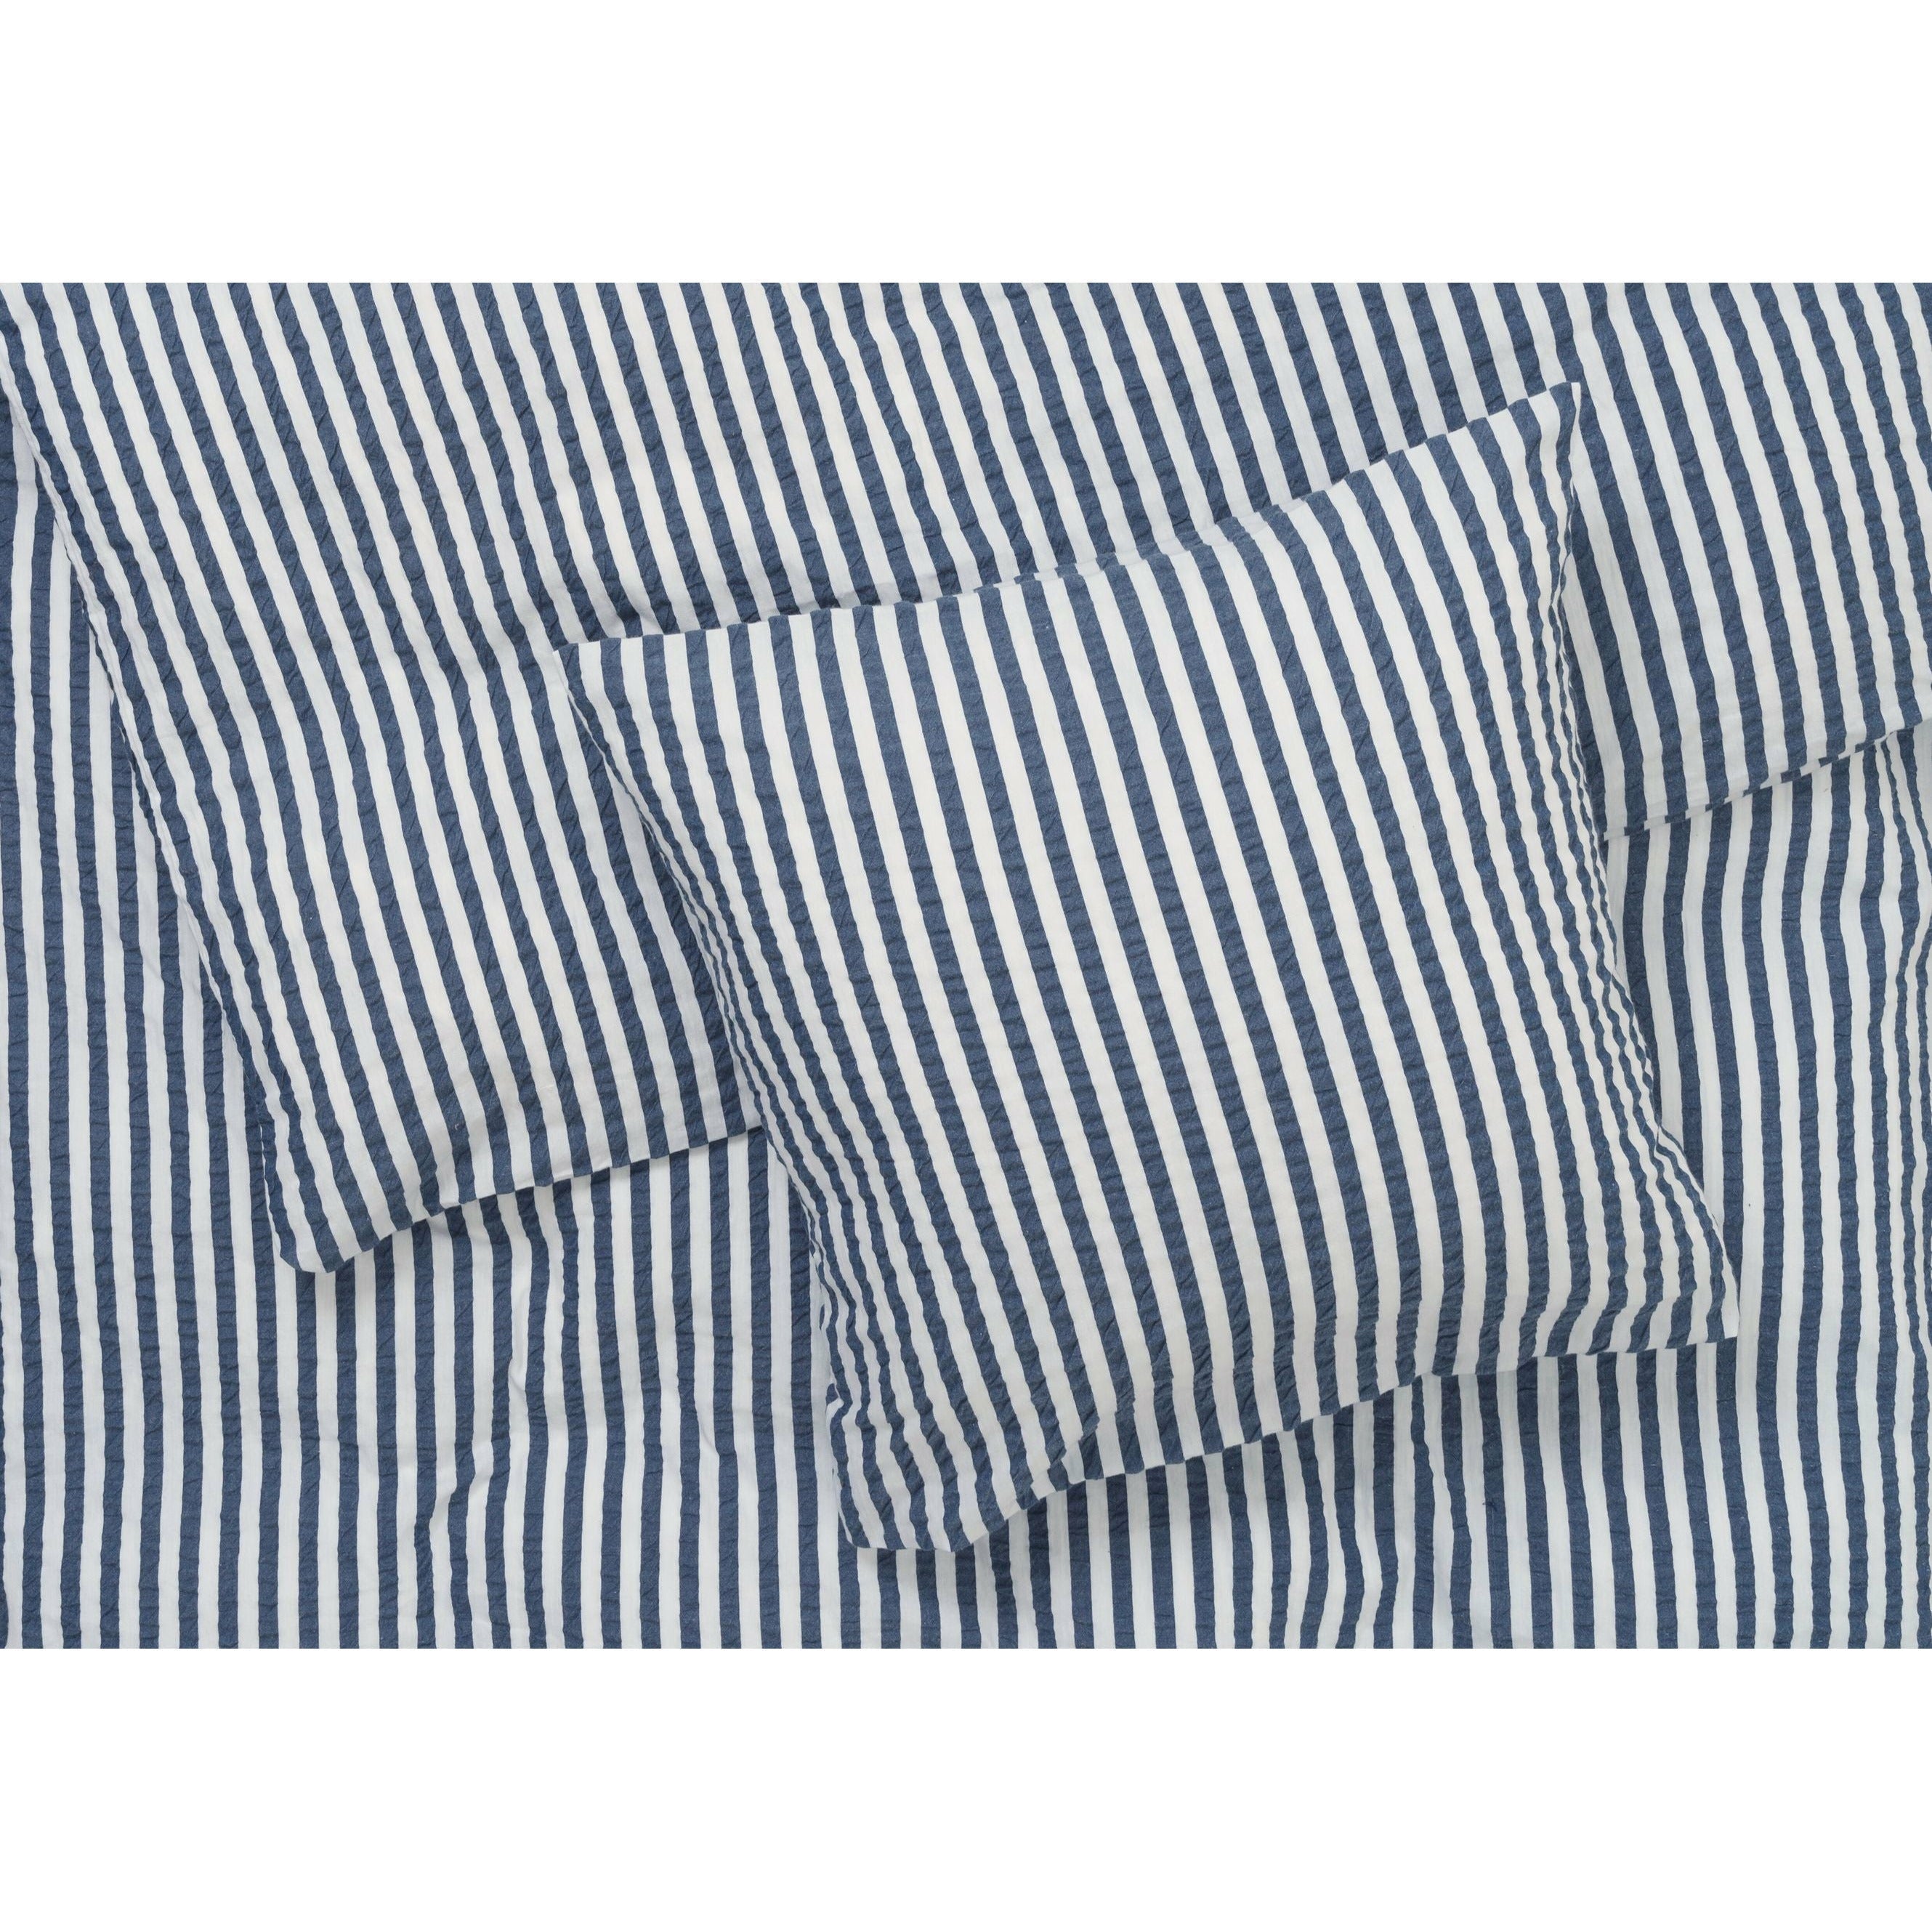 Juna Bæk & Bølge lijnen bedden bedden 200x220 cm, donkerblauw/wit